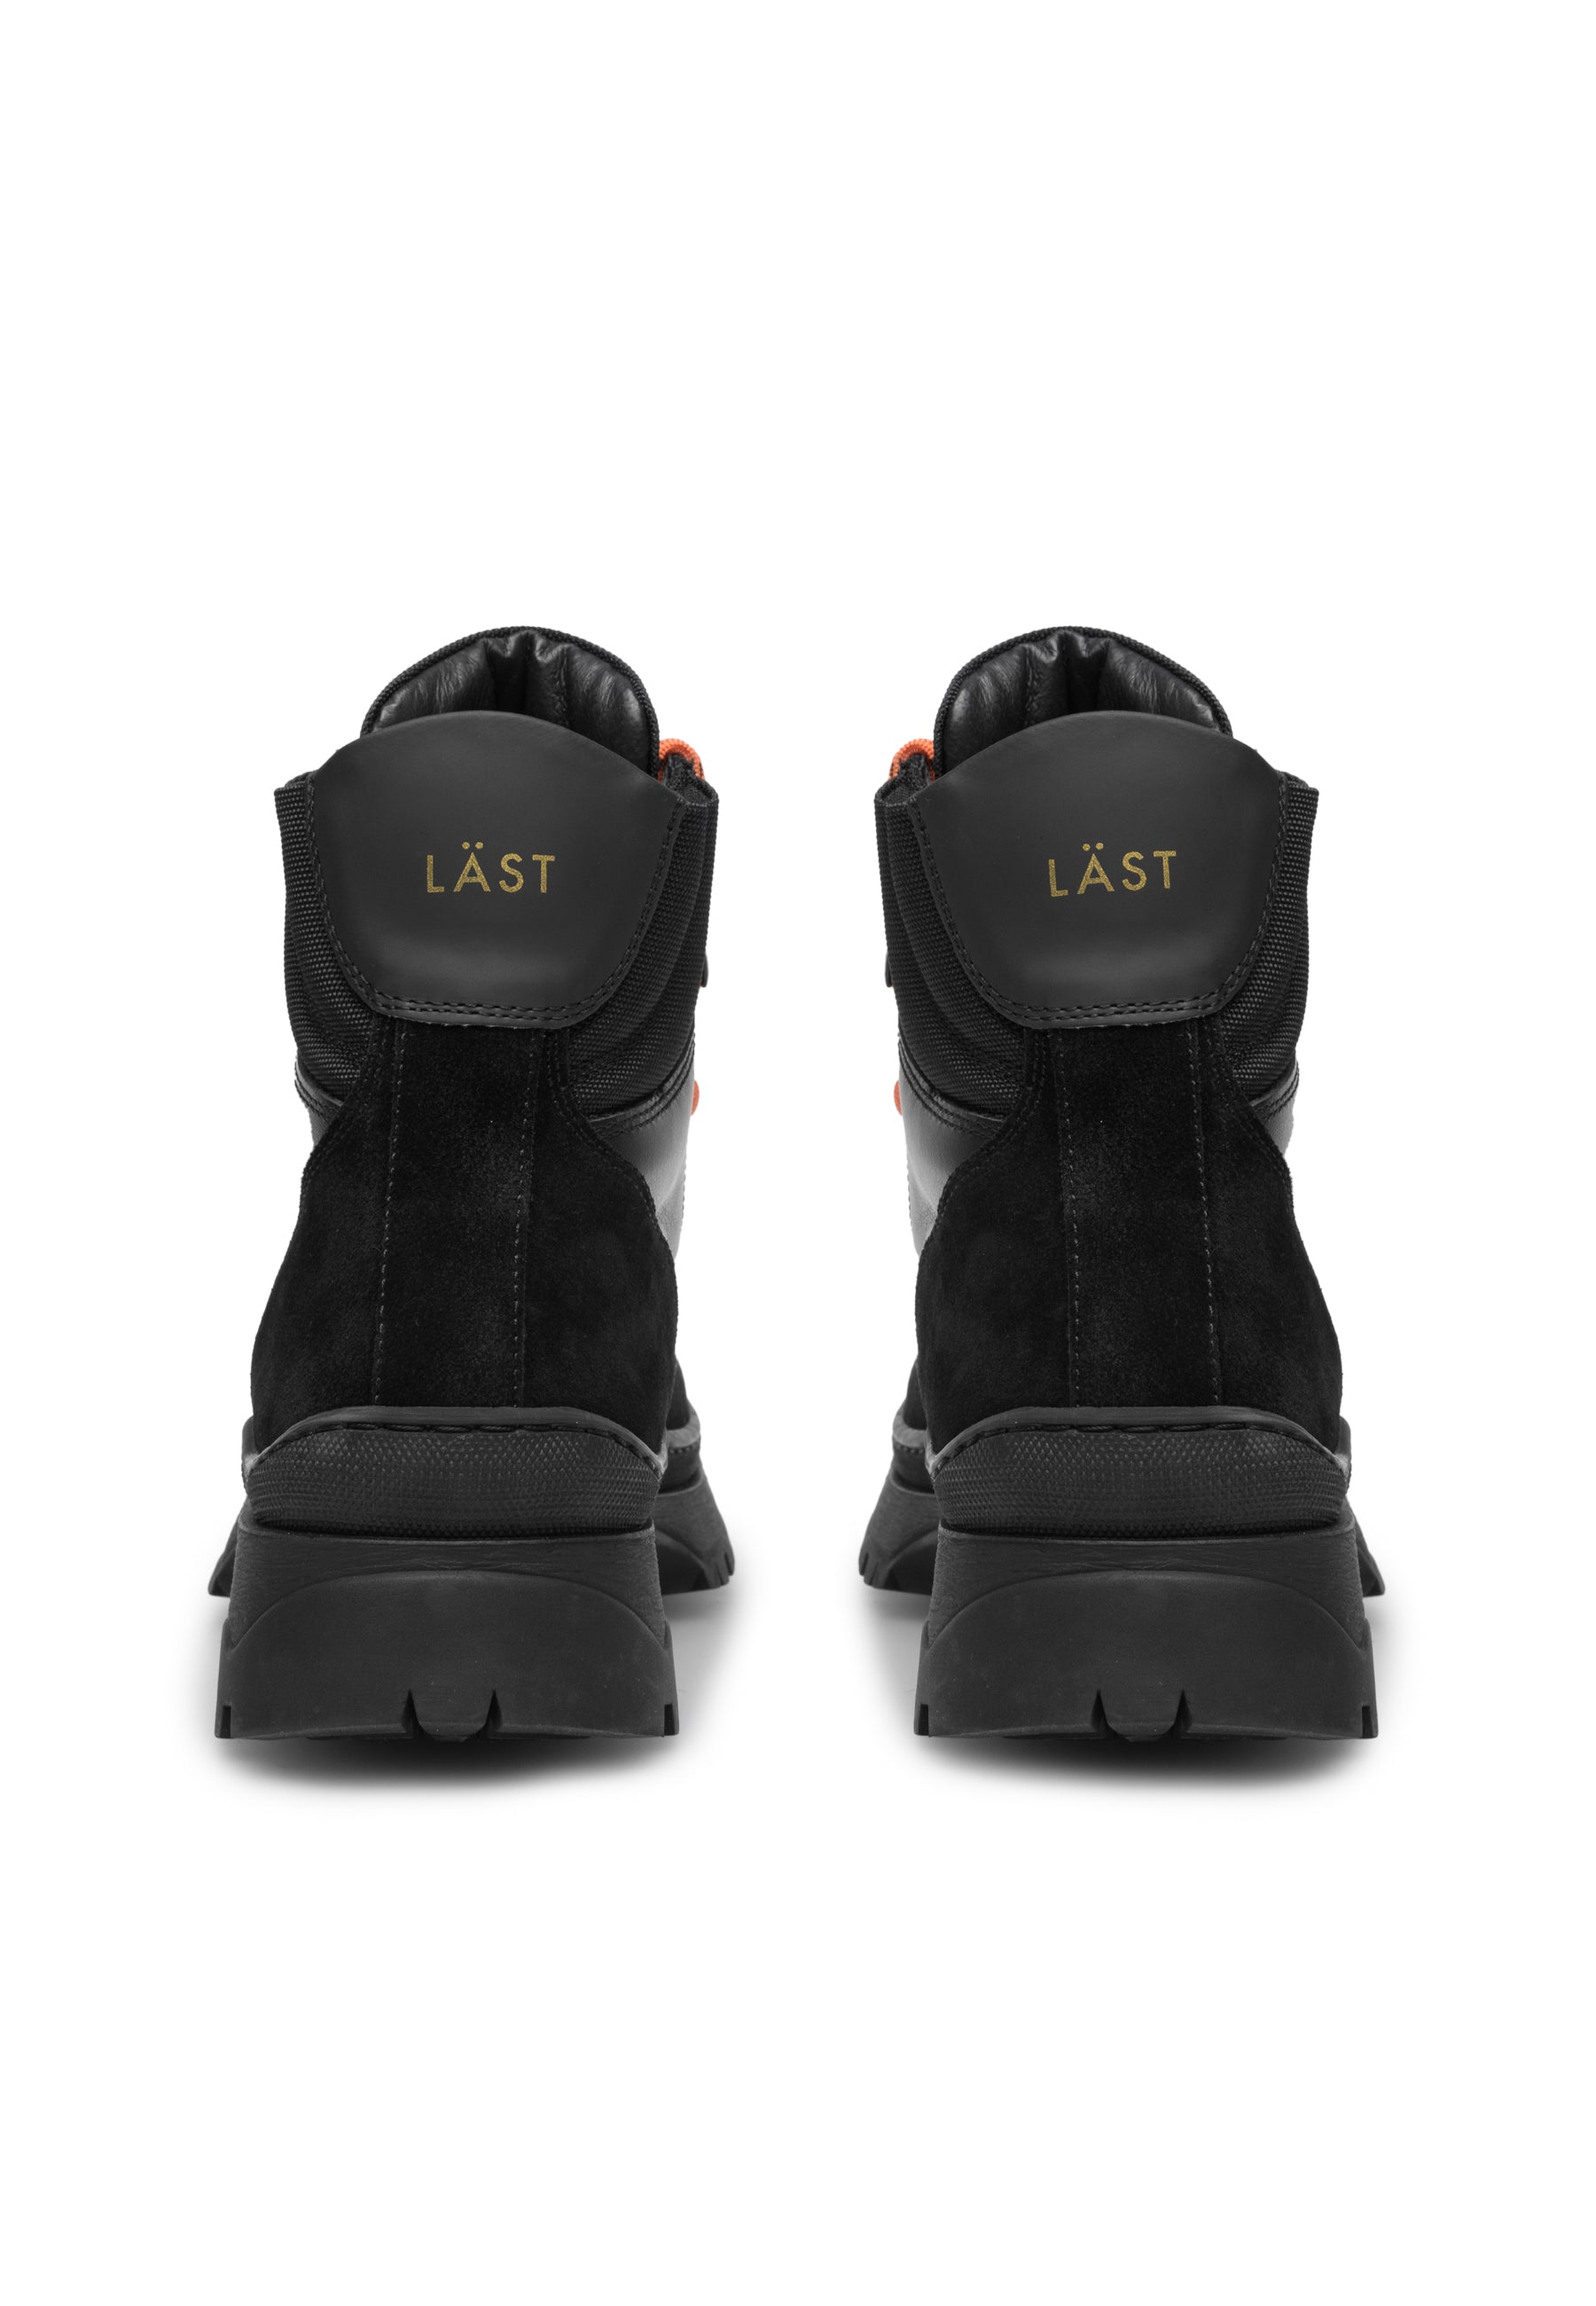 Downhill Boots Black LAST1687 - 4